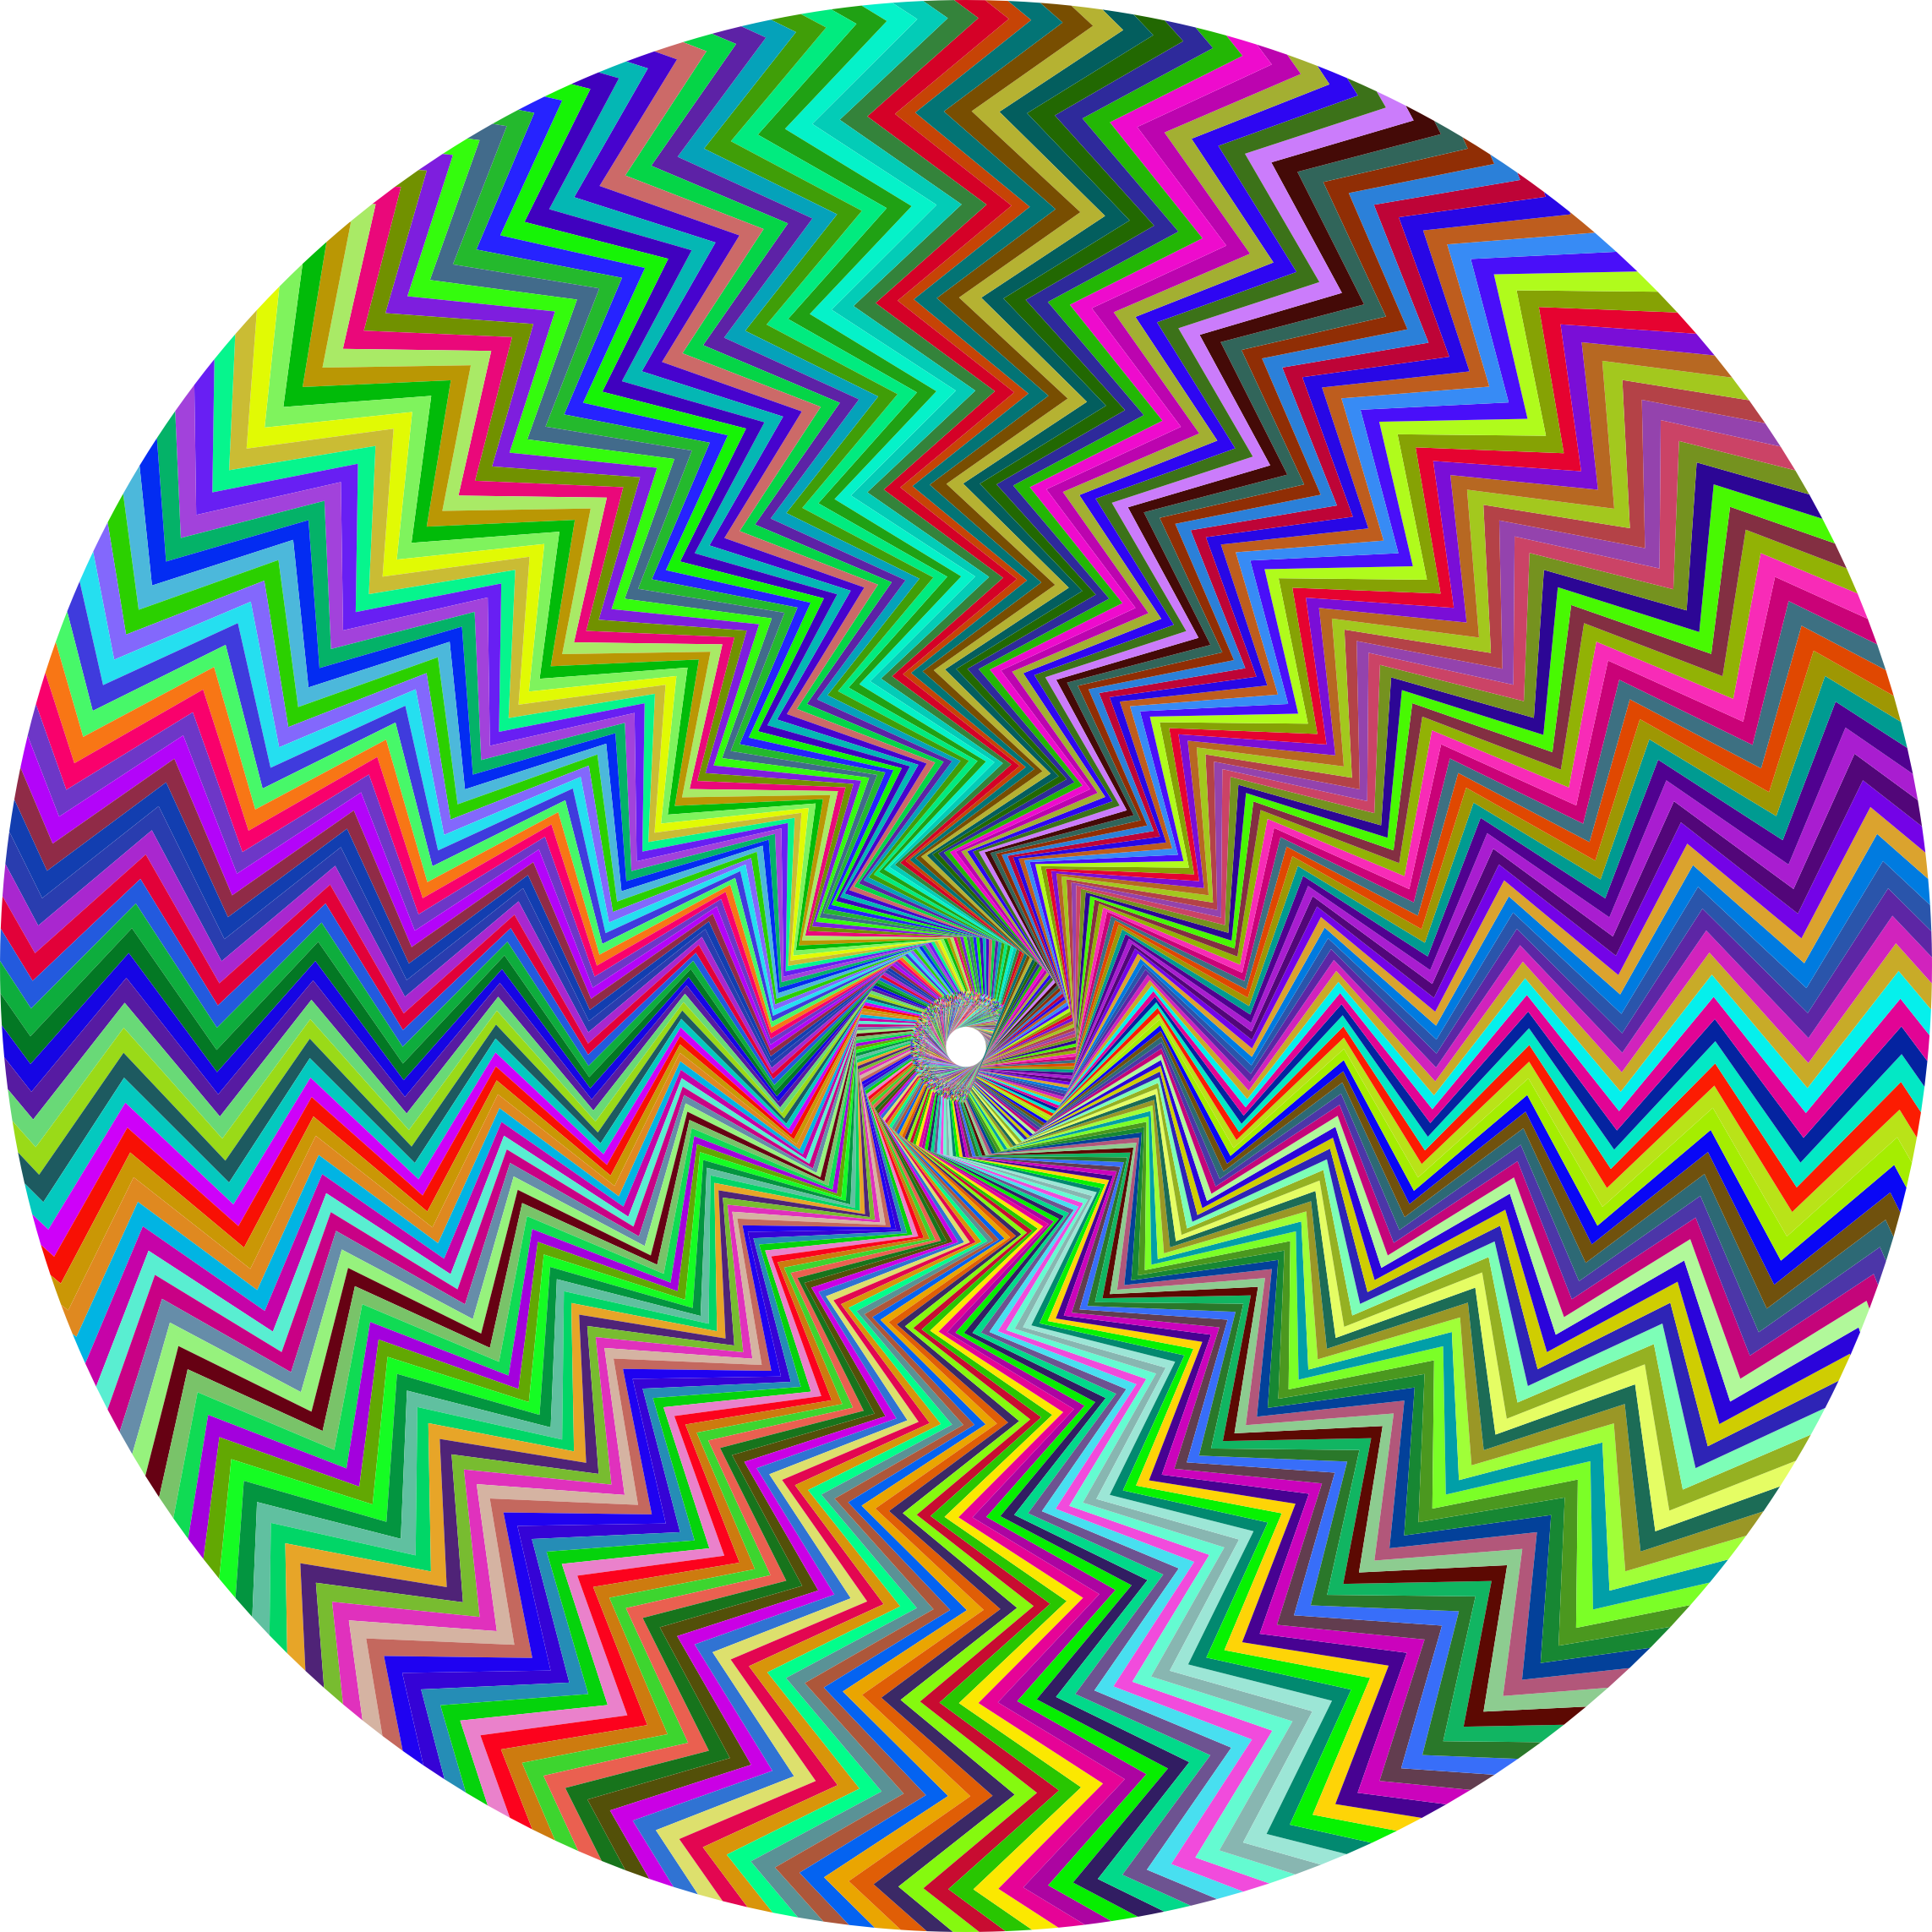 Spiral Illusion Derivative - Spiral Illusion Derivative (2286x2286)